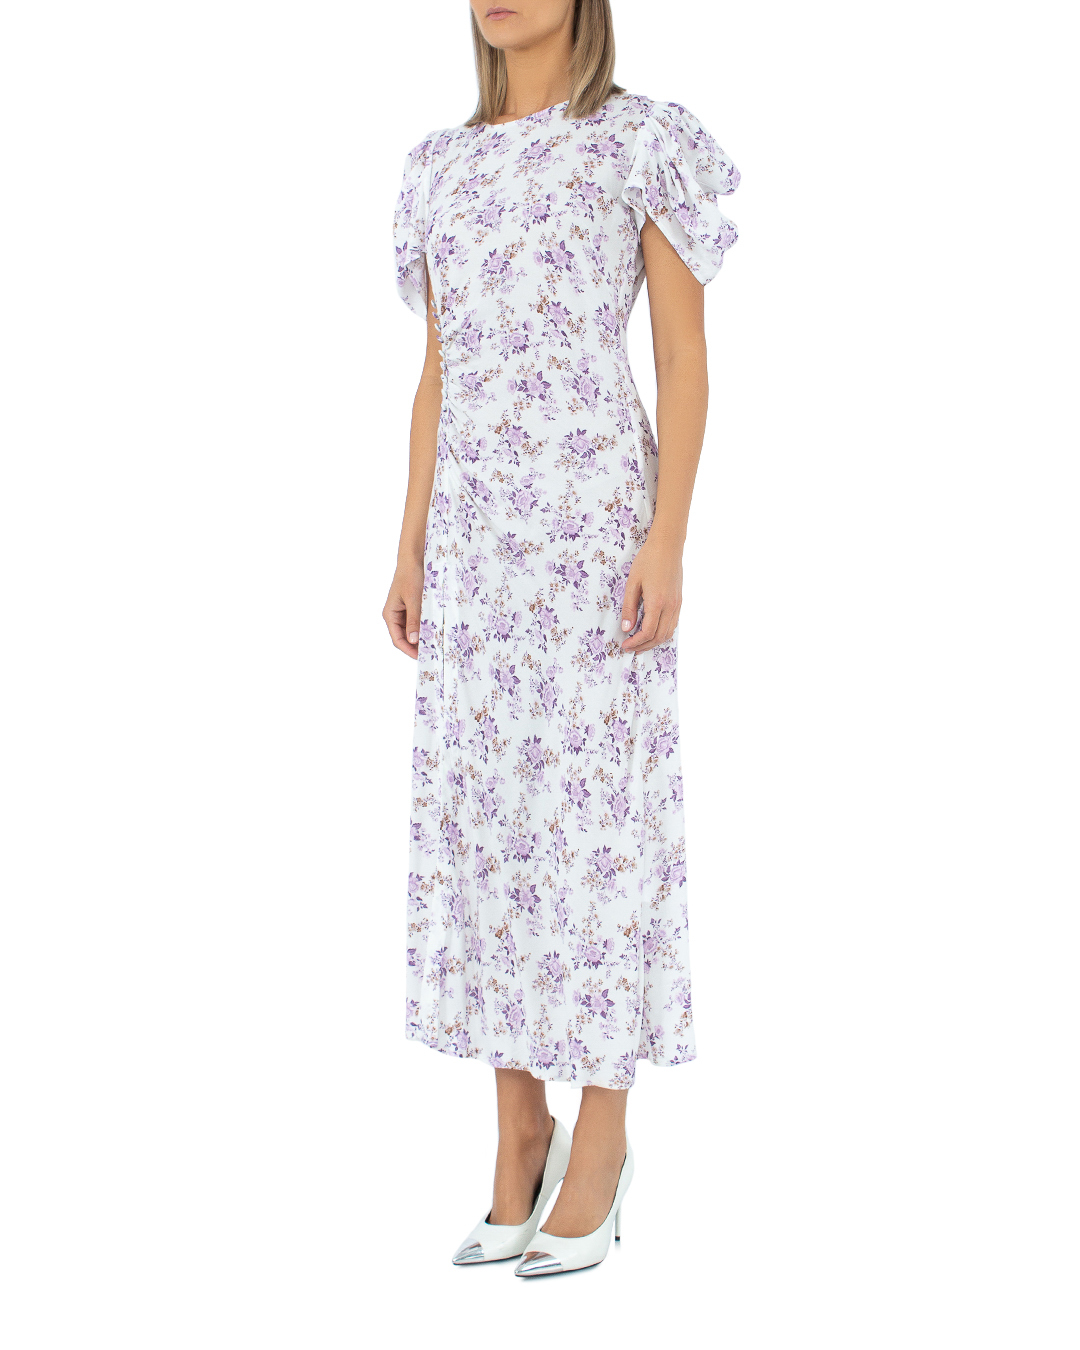 платье MAR DE MARGARITAS MGS3MDMW21KRISTEL белый+фиолетовый l, размер l, цвет белый+фиолетовый MGS3MDMW21KRISTEL белый+фиолетовый l - фото 3